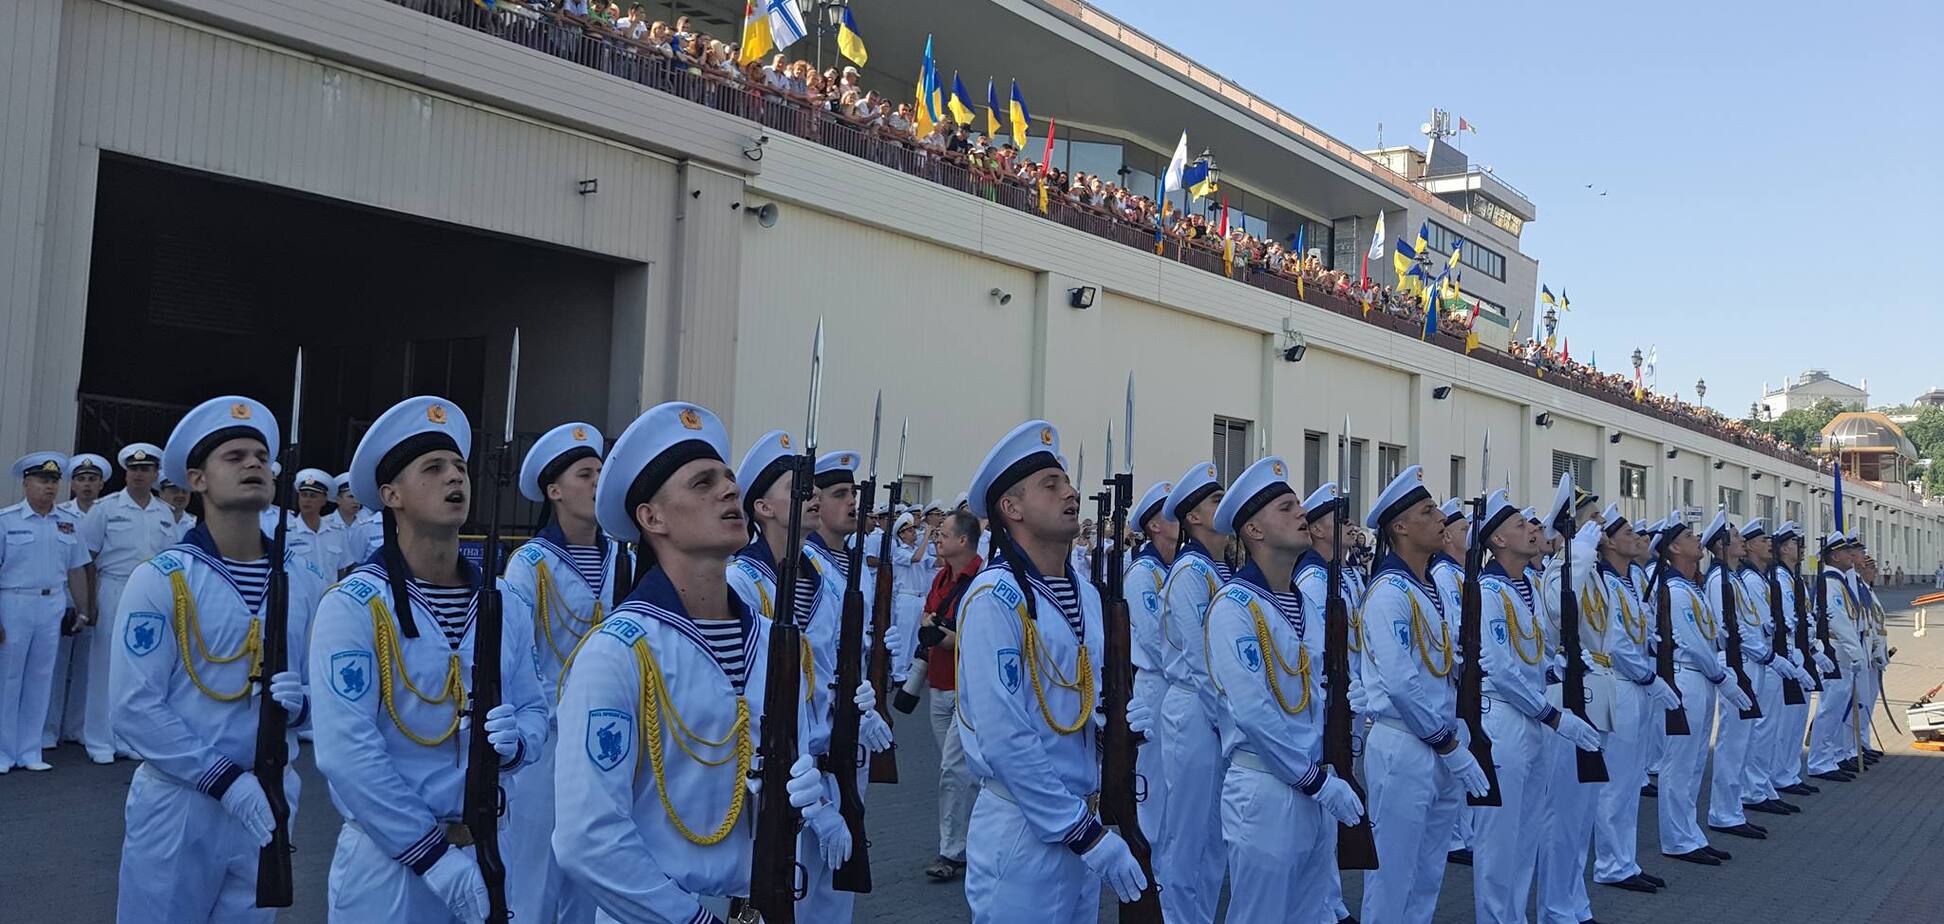 День Военно-морских сил Украины в 2020 году отмечается 5 июля